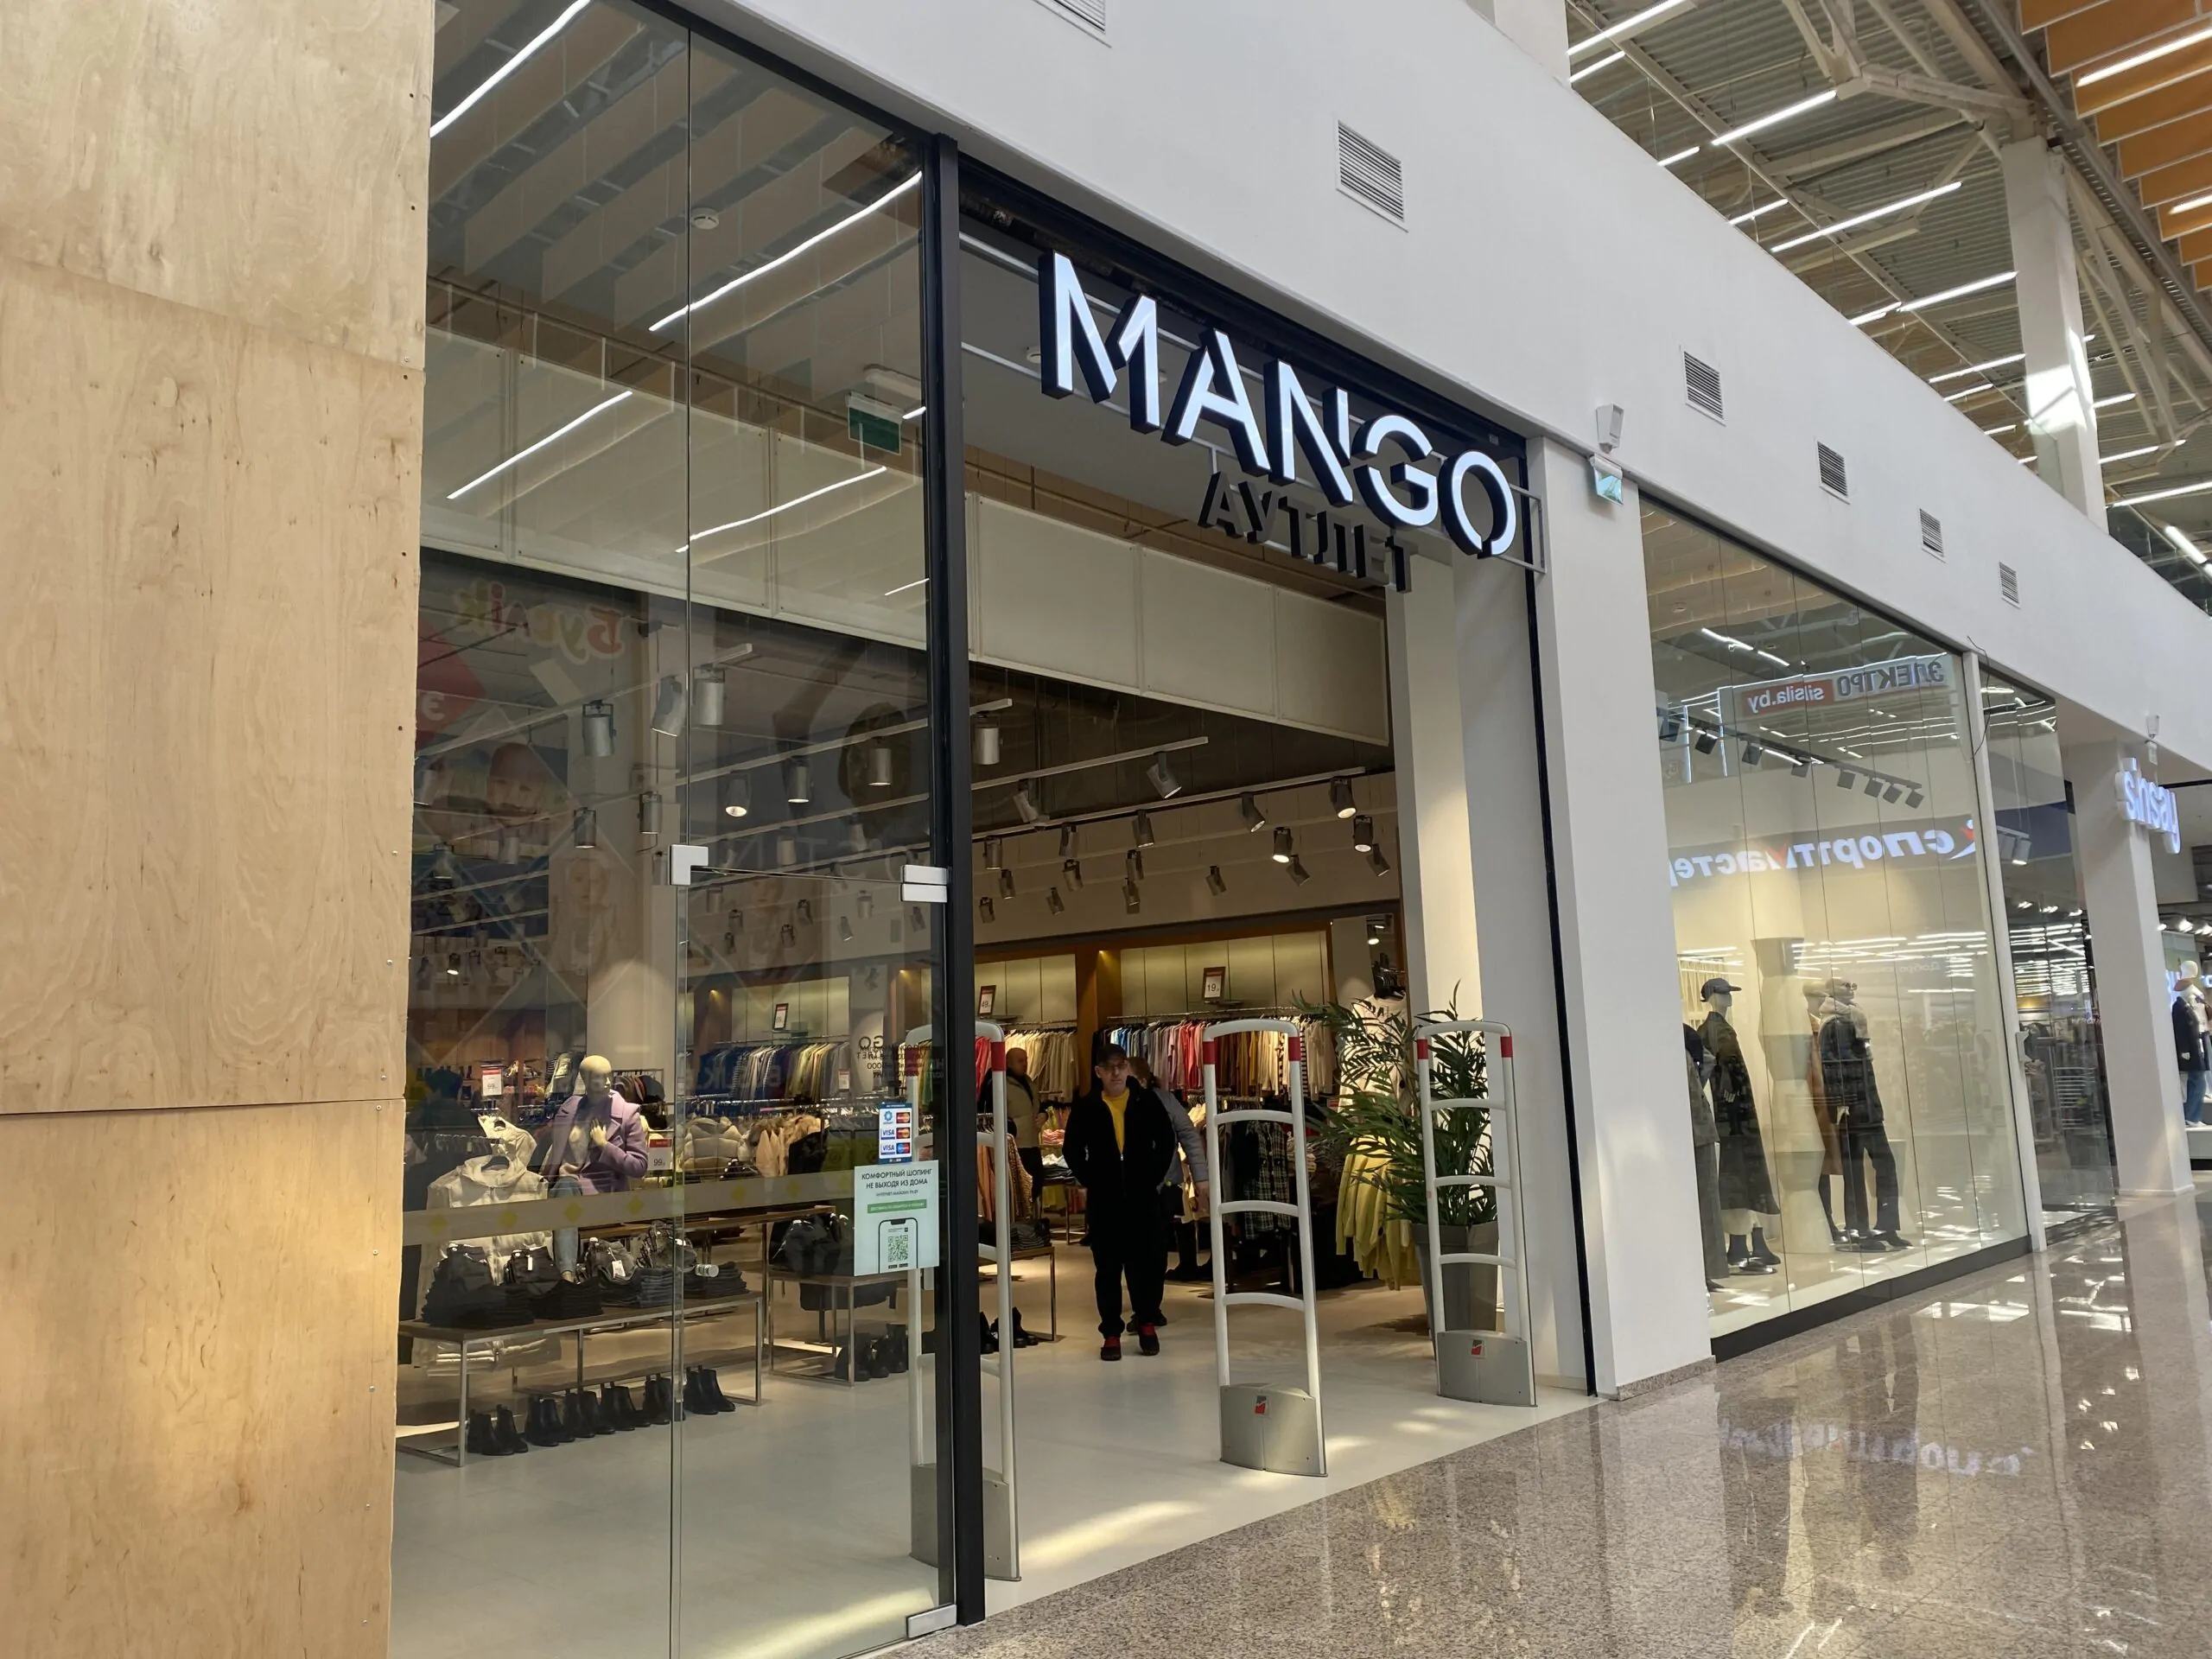 Mango Outlet открылся в ТЦ Expobel. Мы сходили и оценили ассортимент